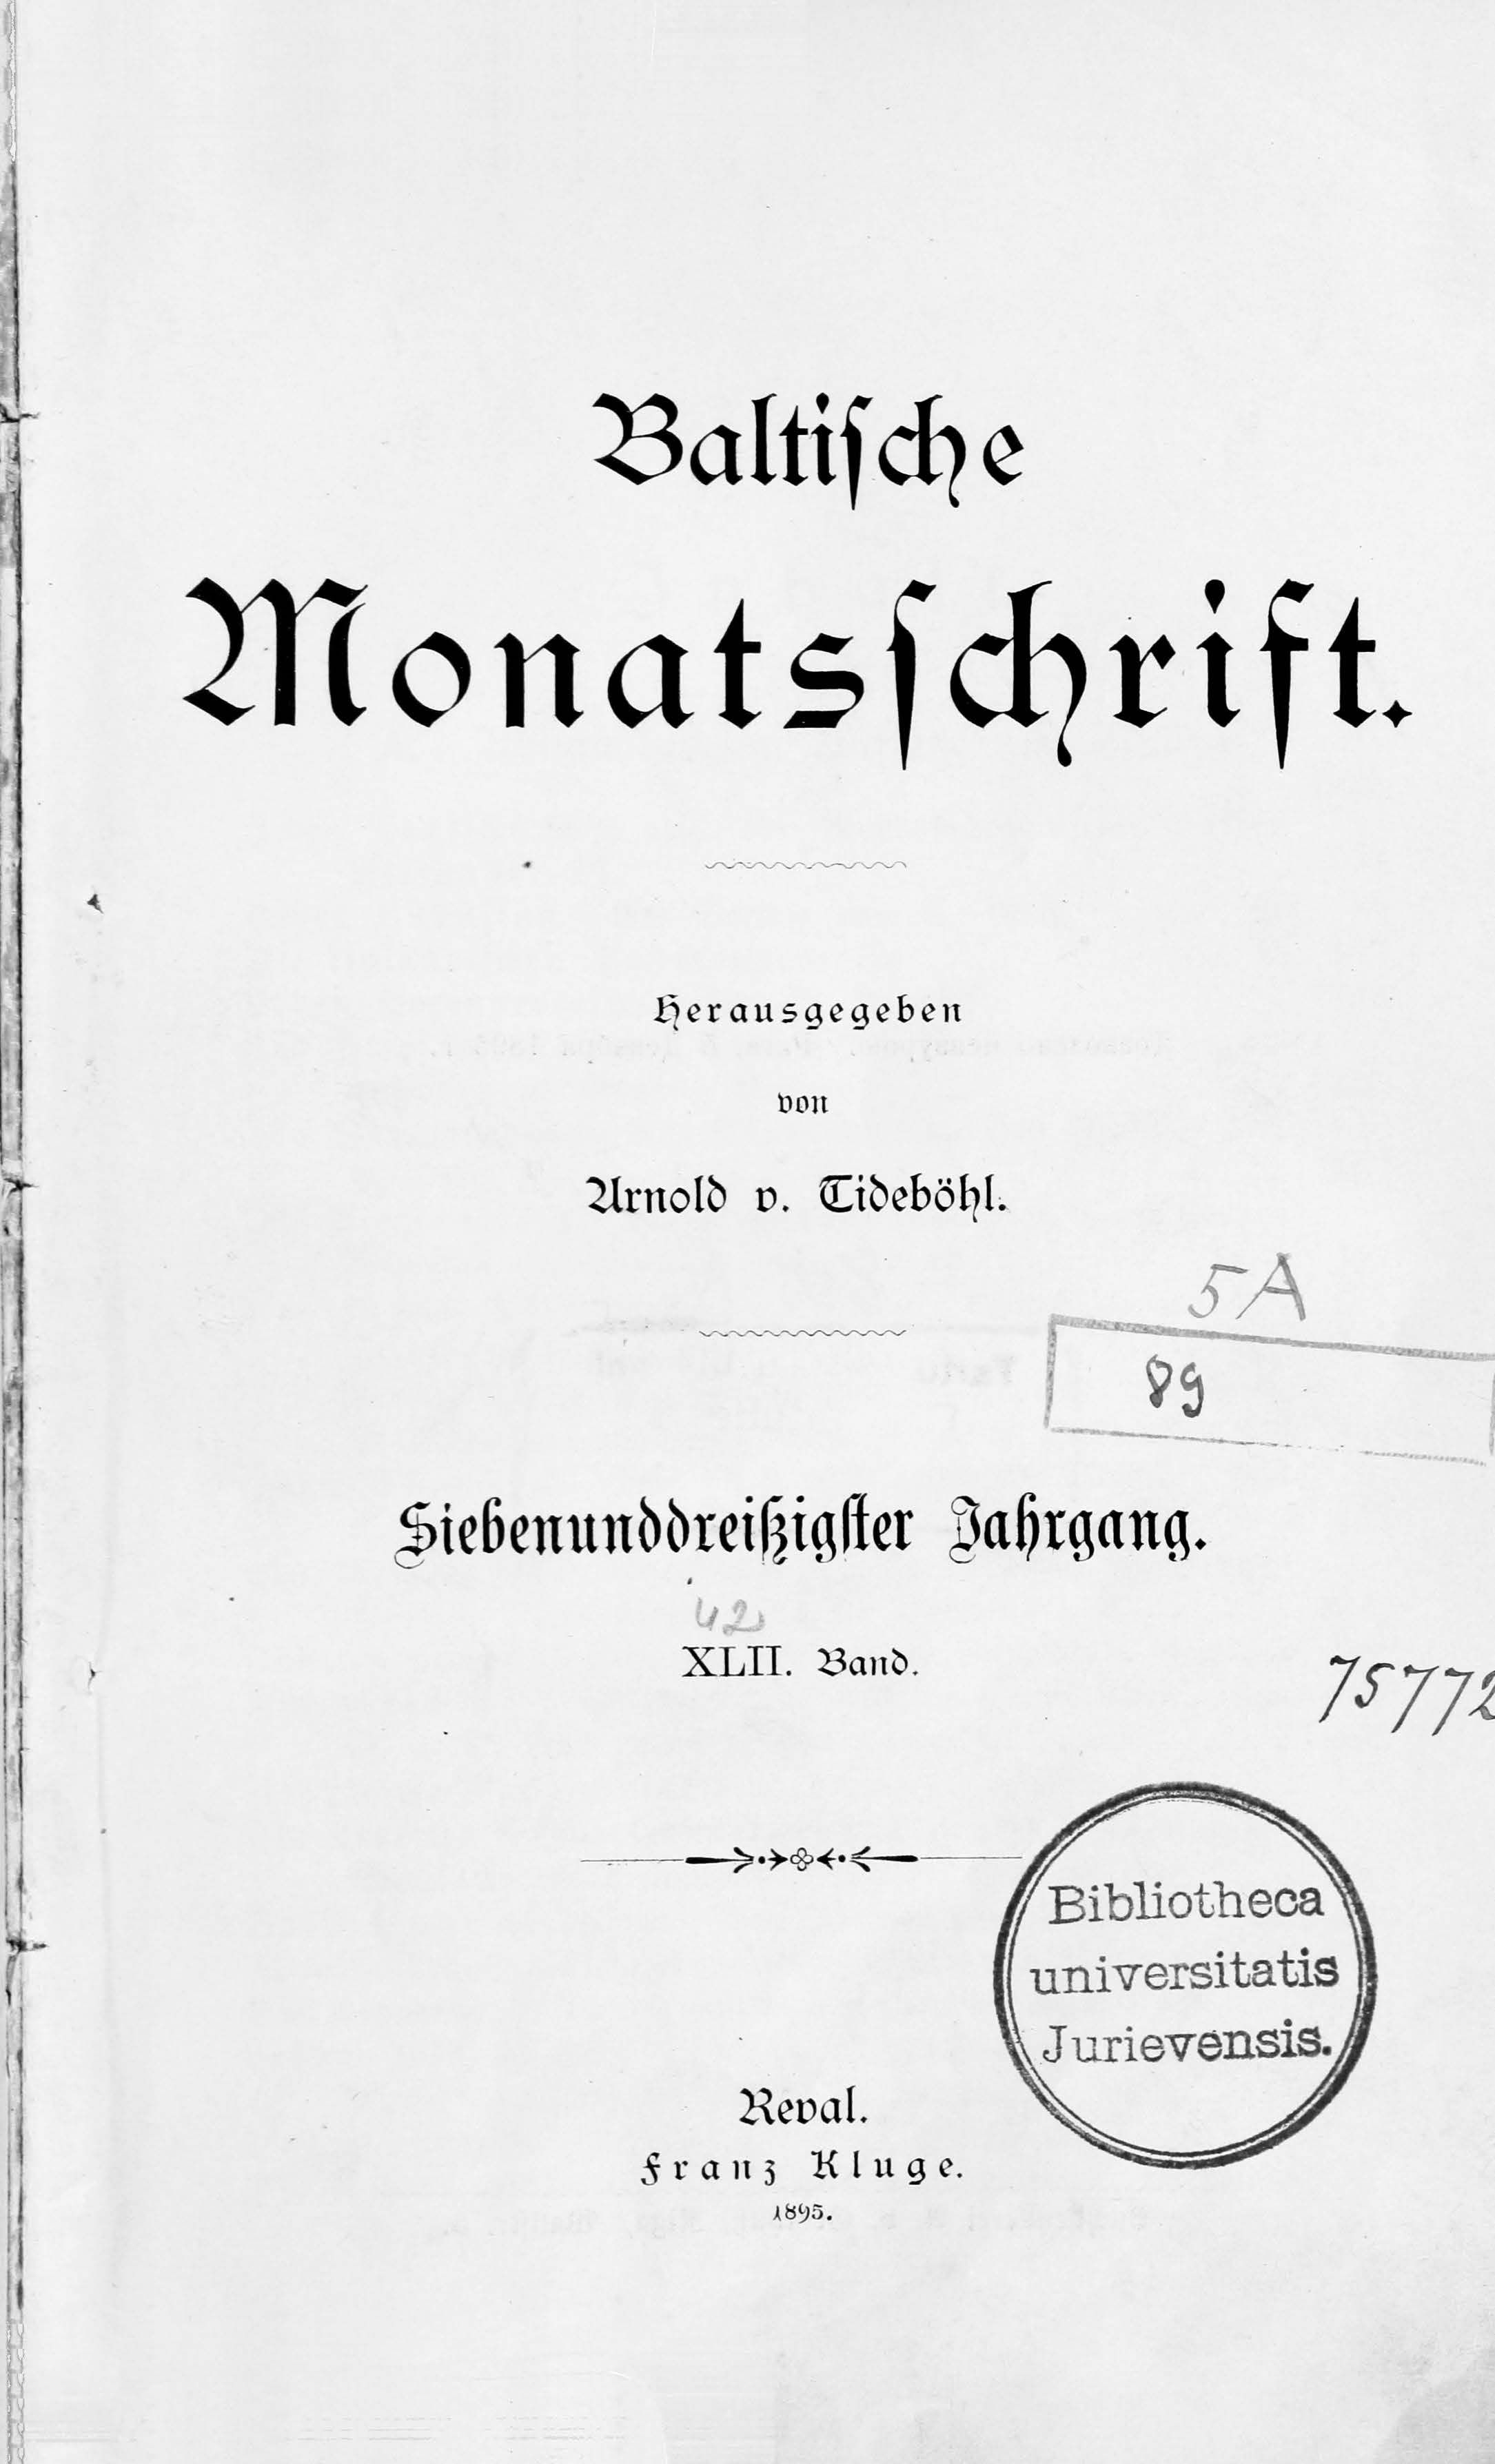 Baltische Monatsschrift [42] (1895) | 1. Титульный лист